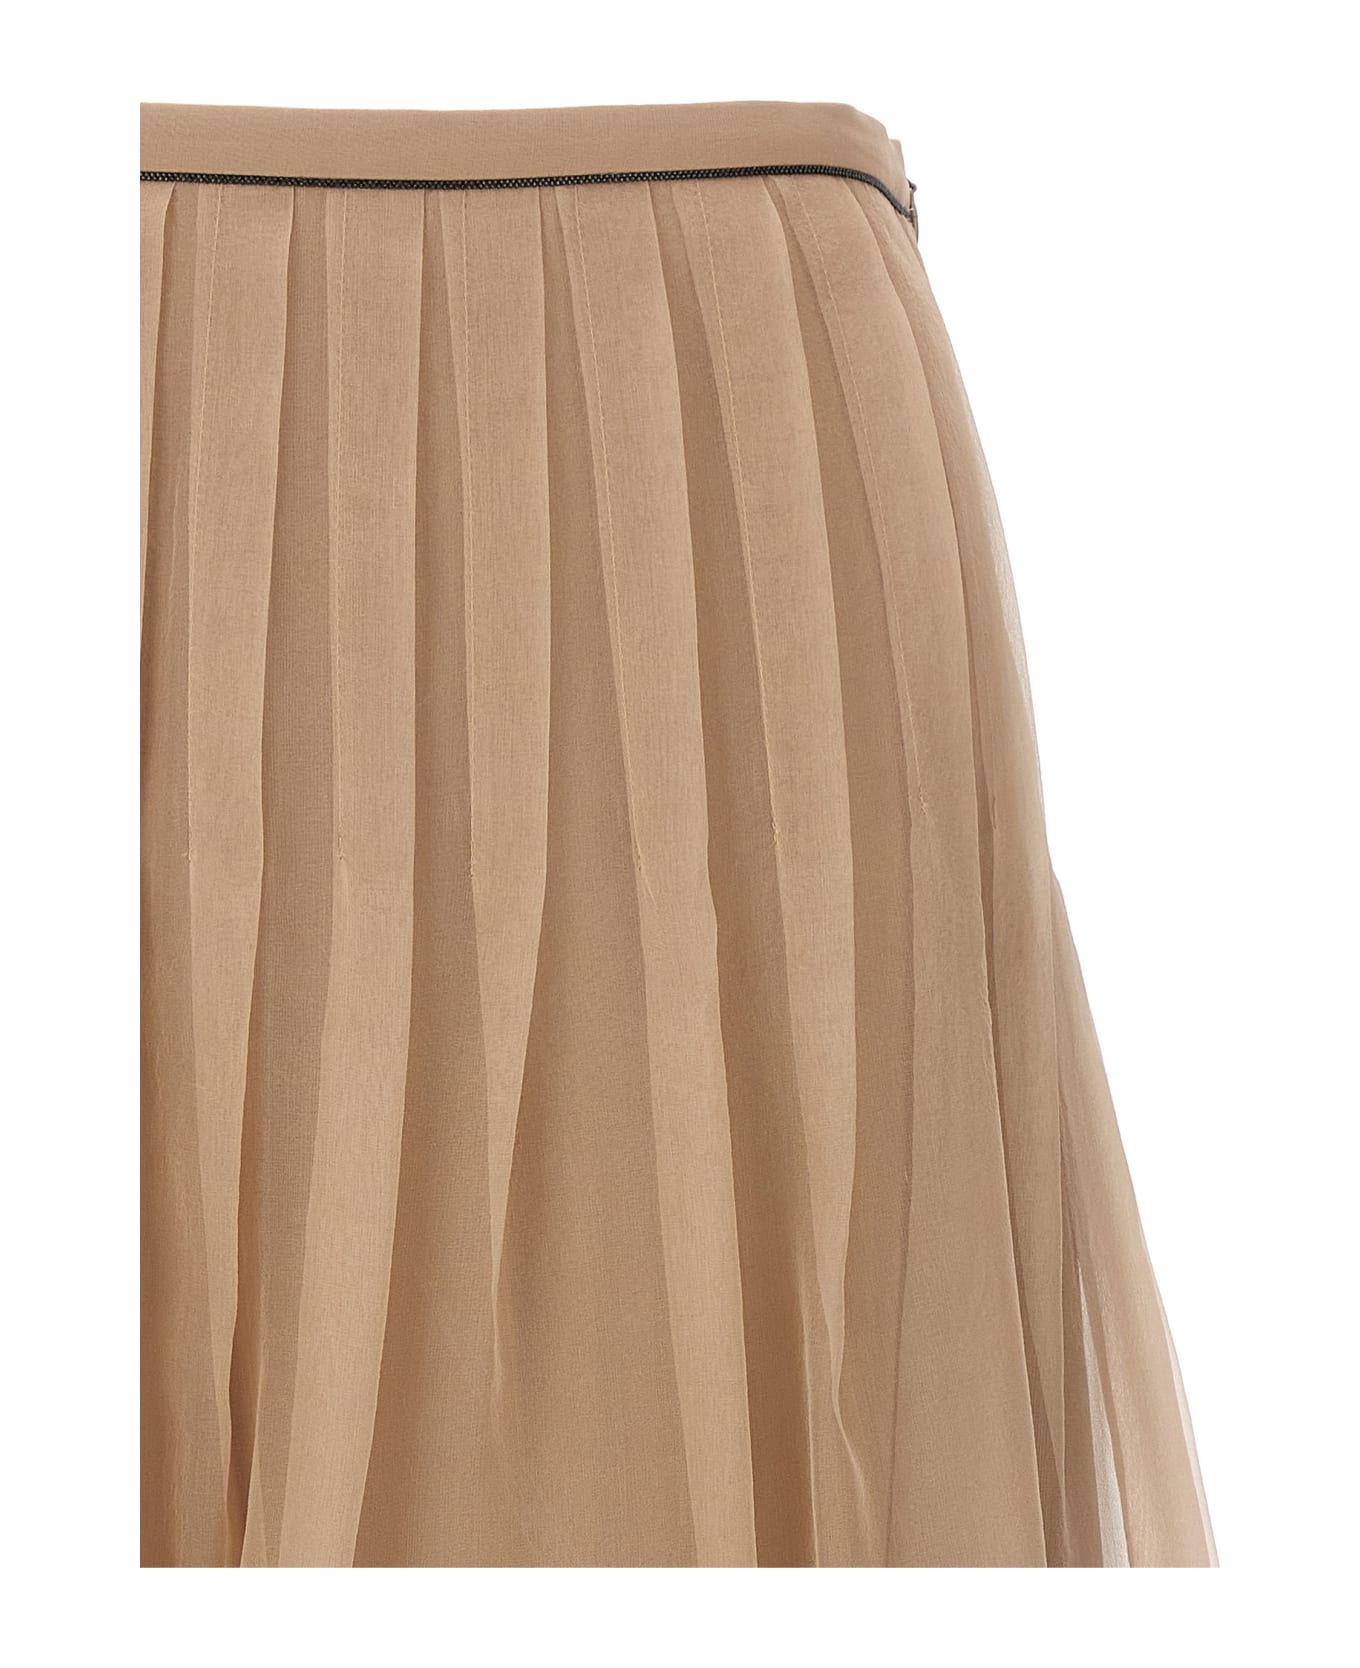 Brunello Cucinelli Pleated Skirt - Beige